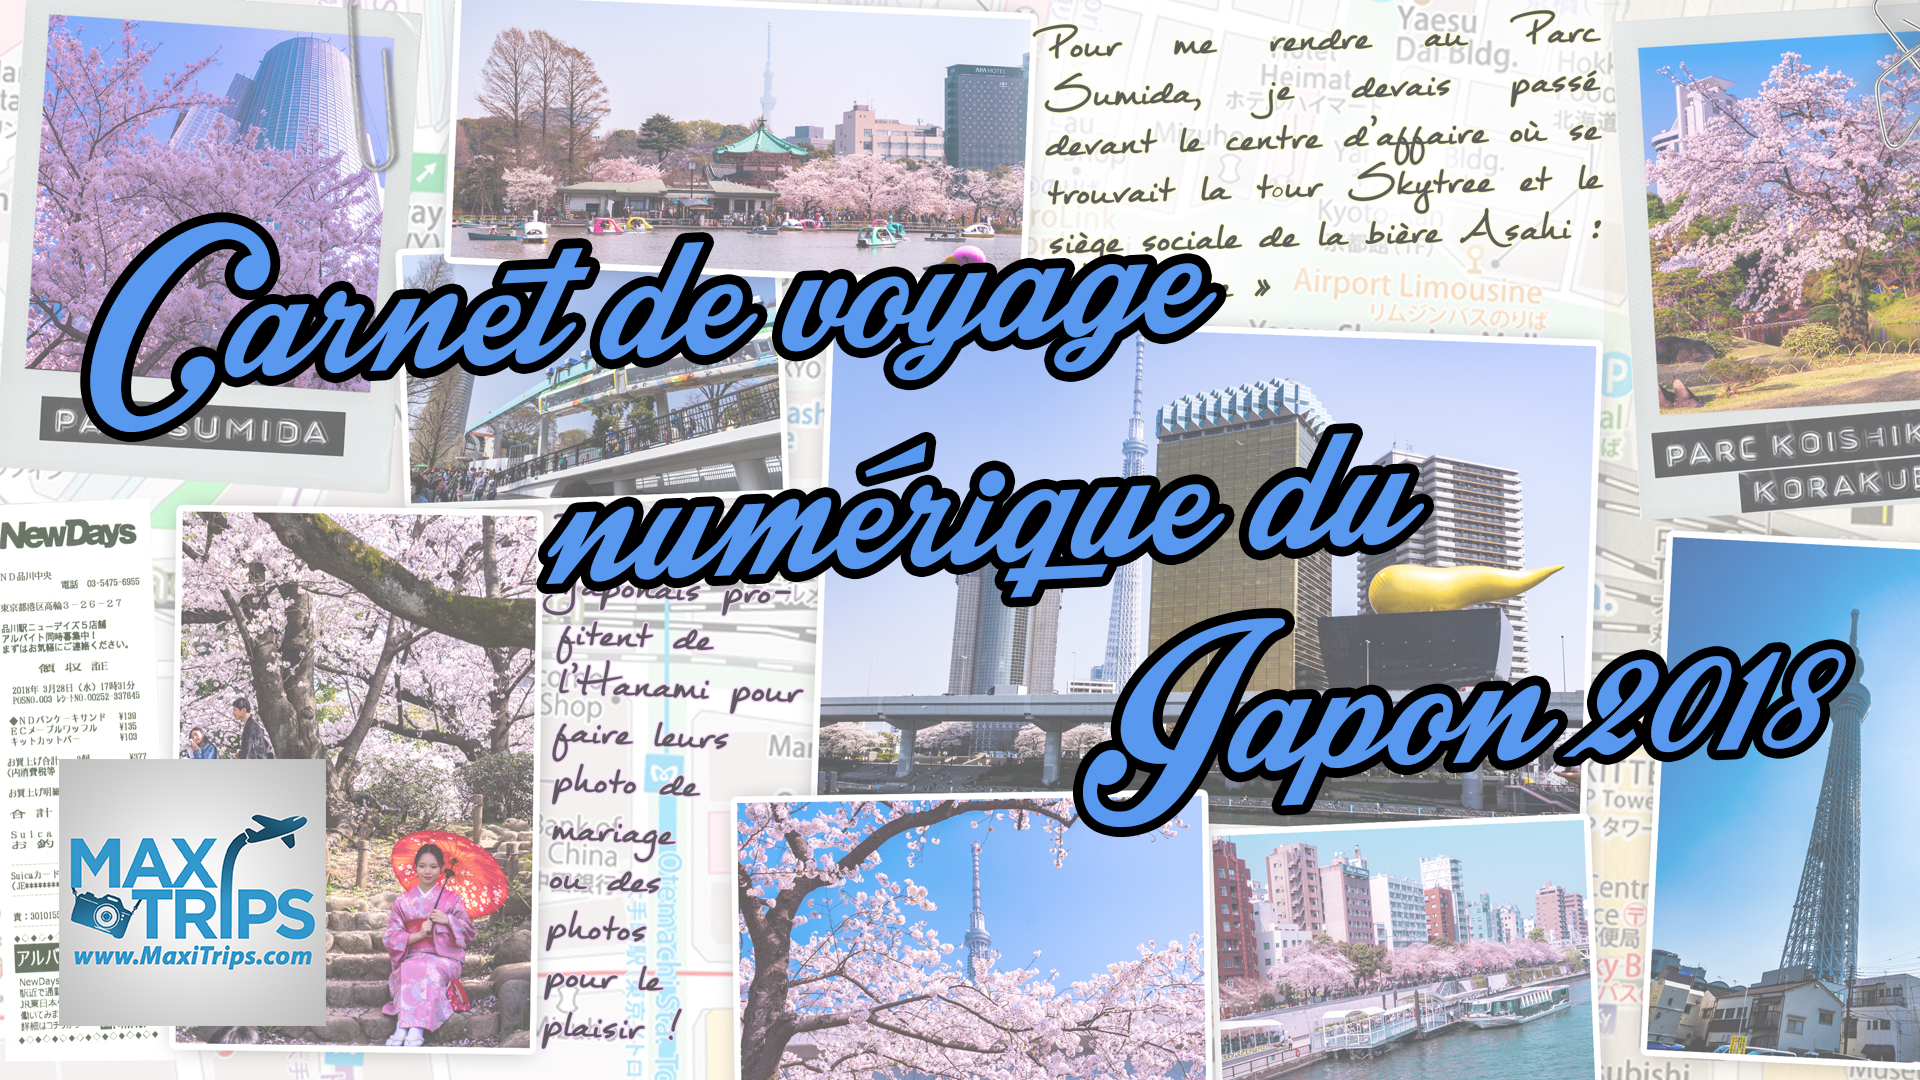 CARNET DE VOYAGE NUMÉRIQUE DU JAPON 2018 - Carnet de voyage numérique  (scrapbooking numérique) & blog voyage